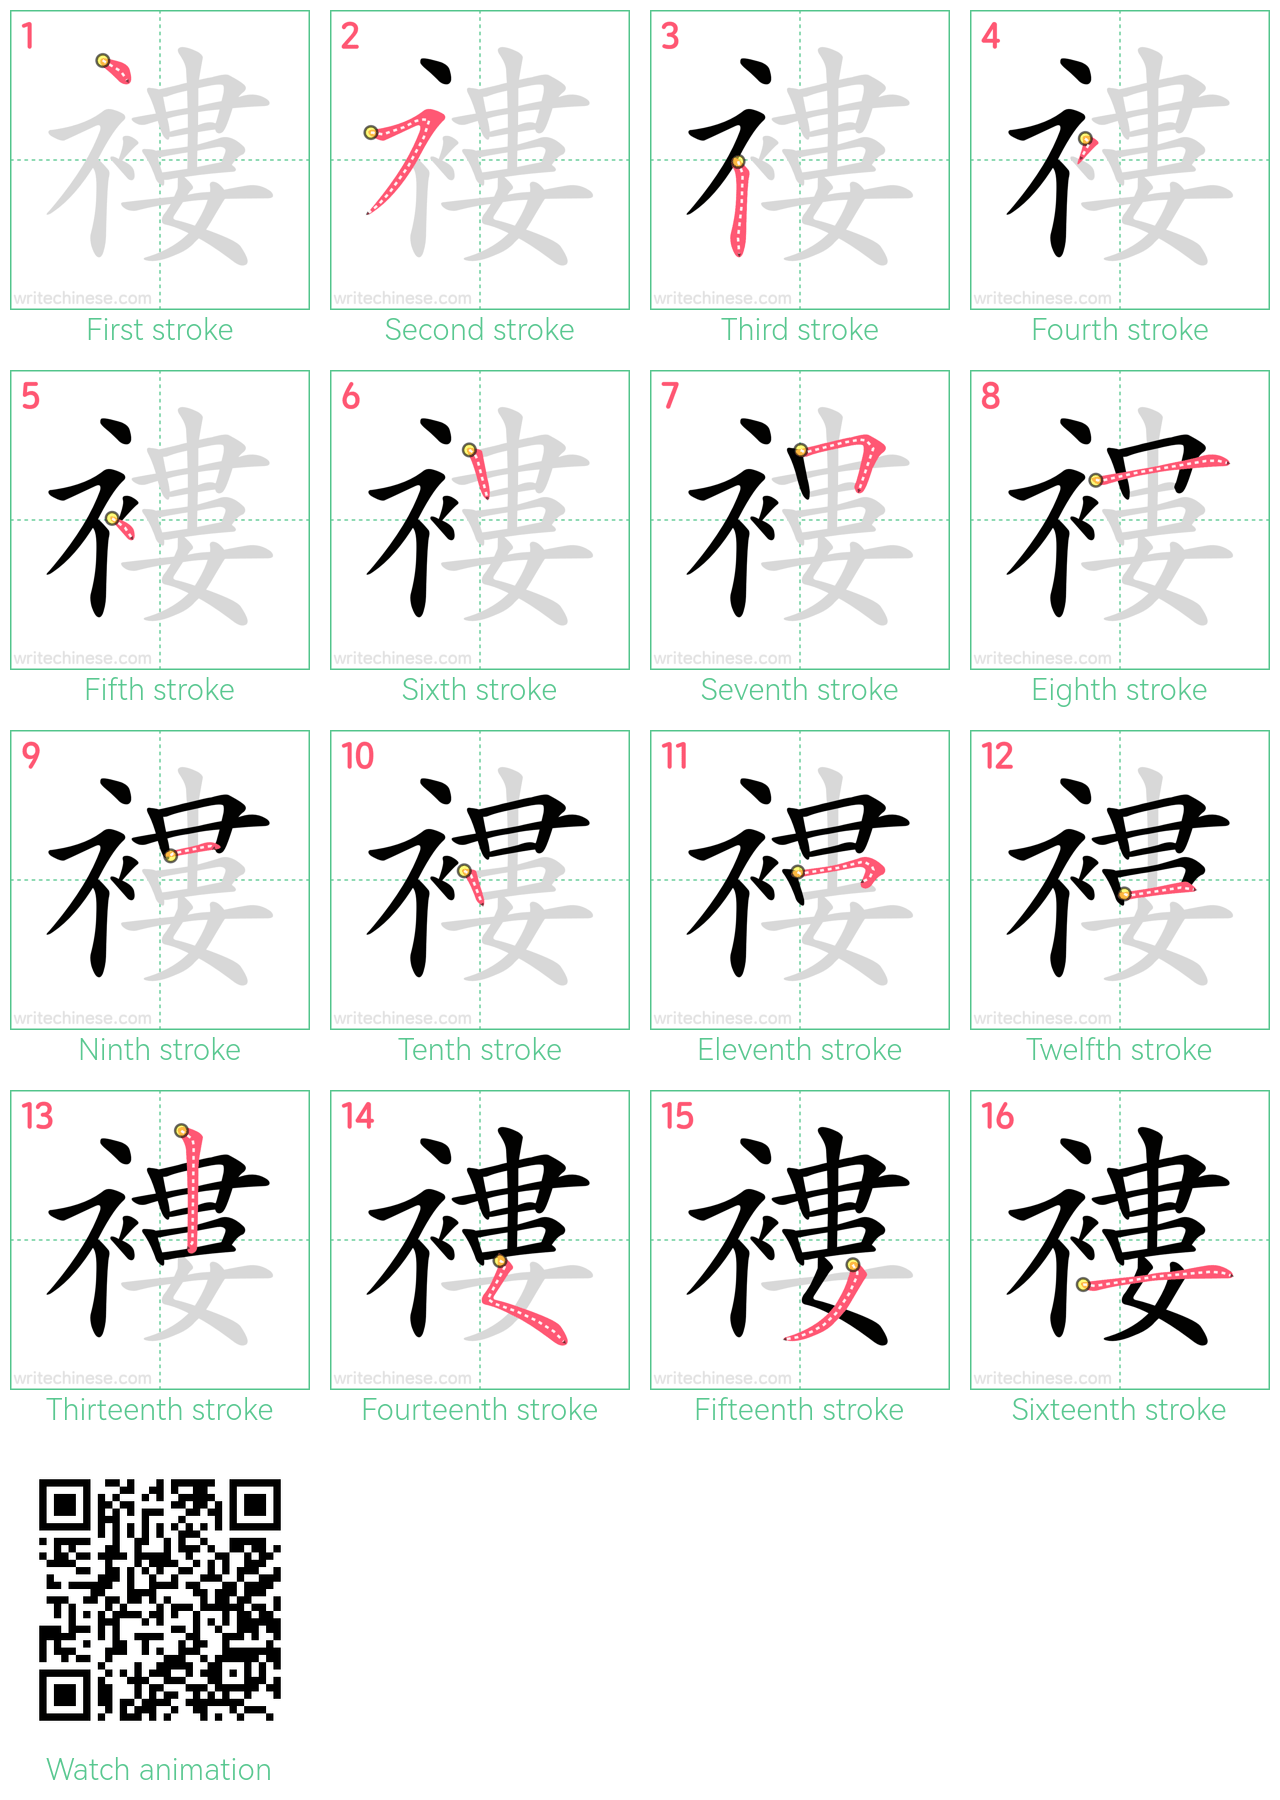 褸 step-by-step stroke order diagrams